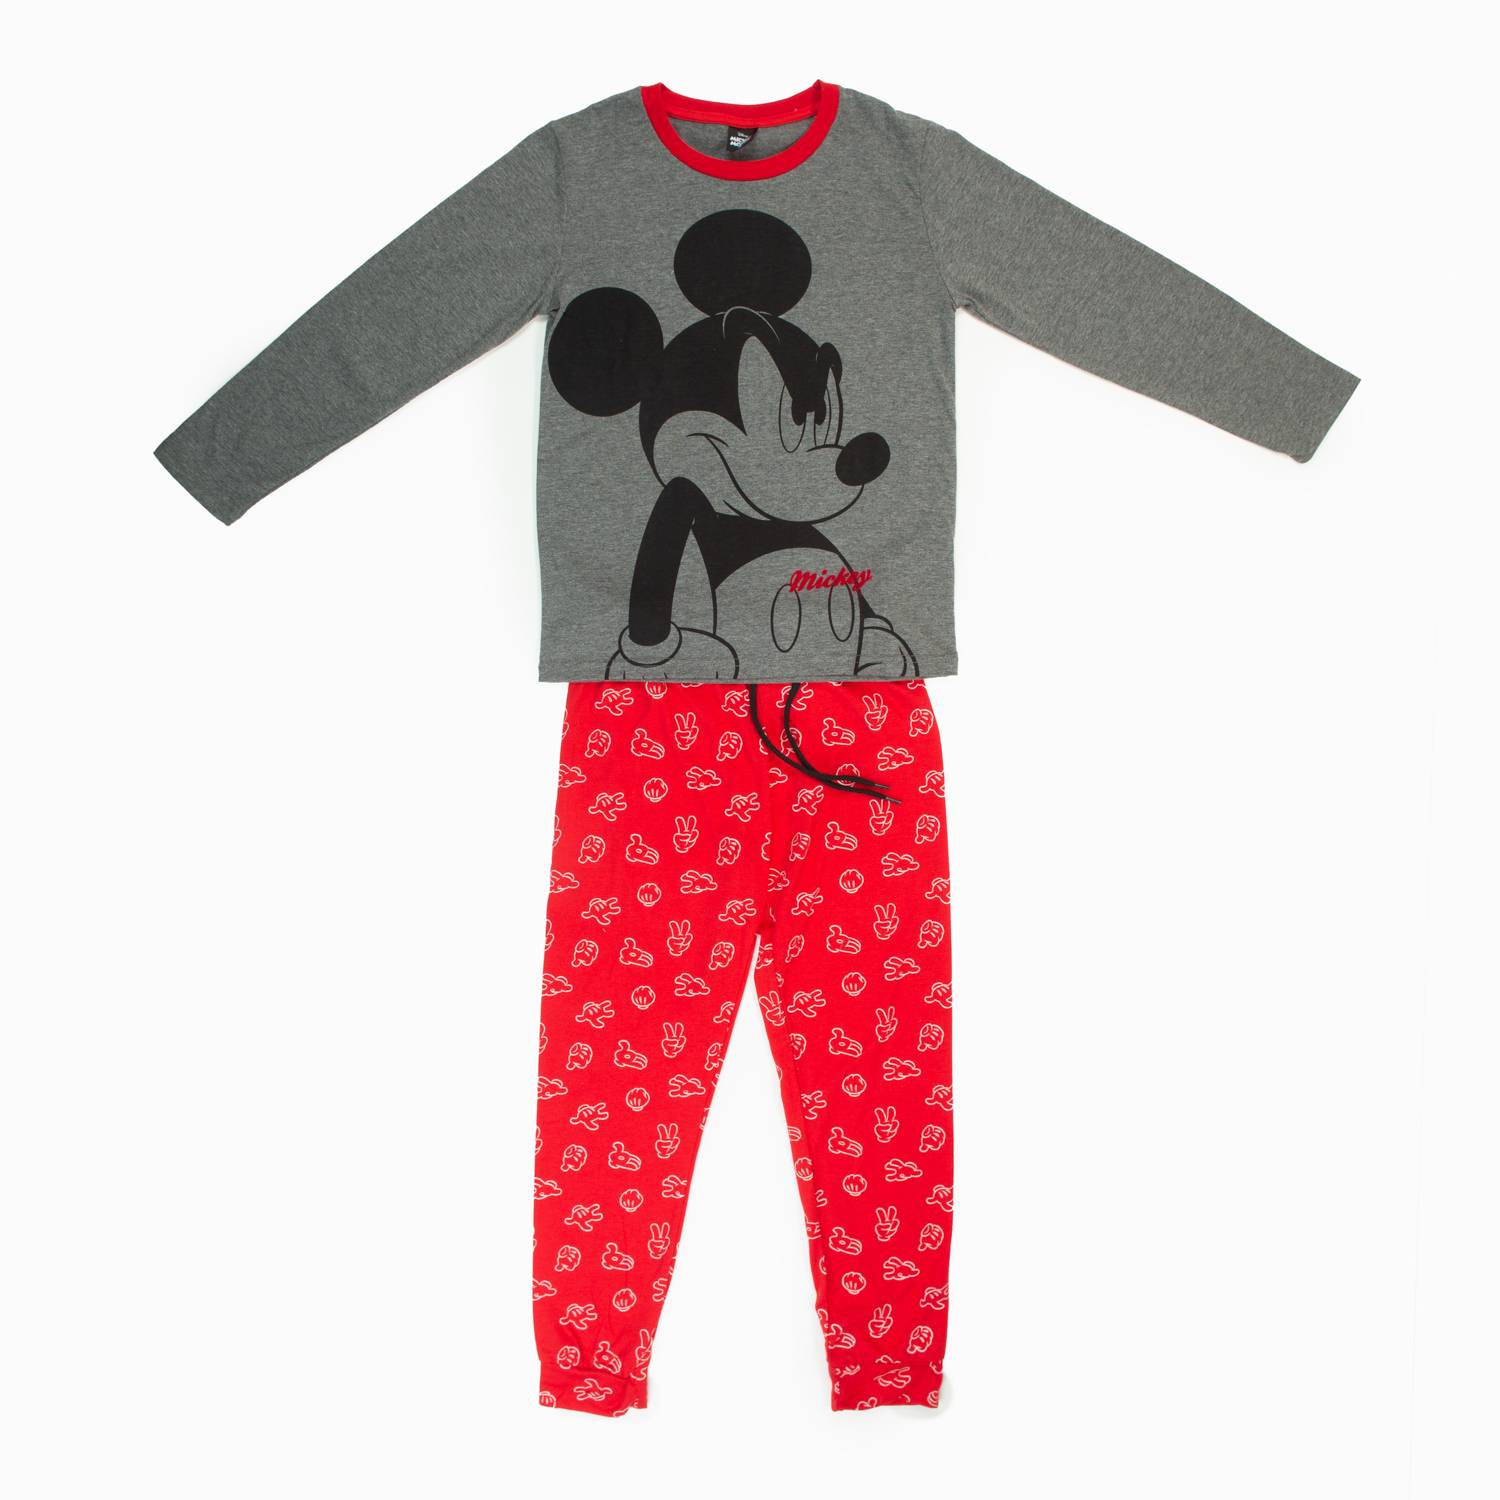 Pijama de niño de Mickey Mouse gris y rojo 70 % algodón-30 % poliéster